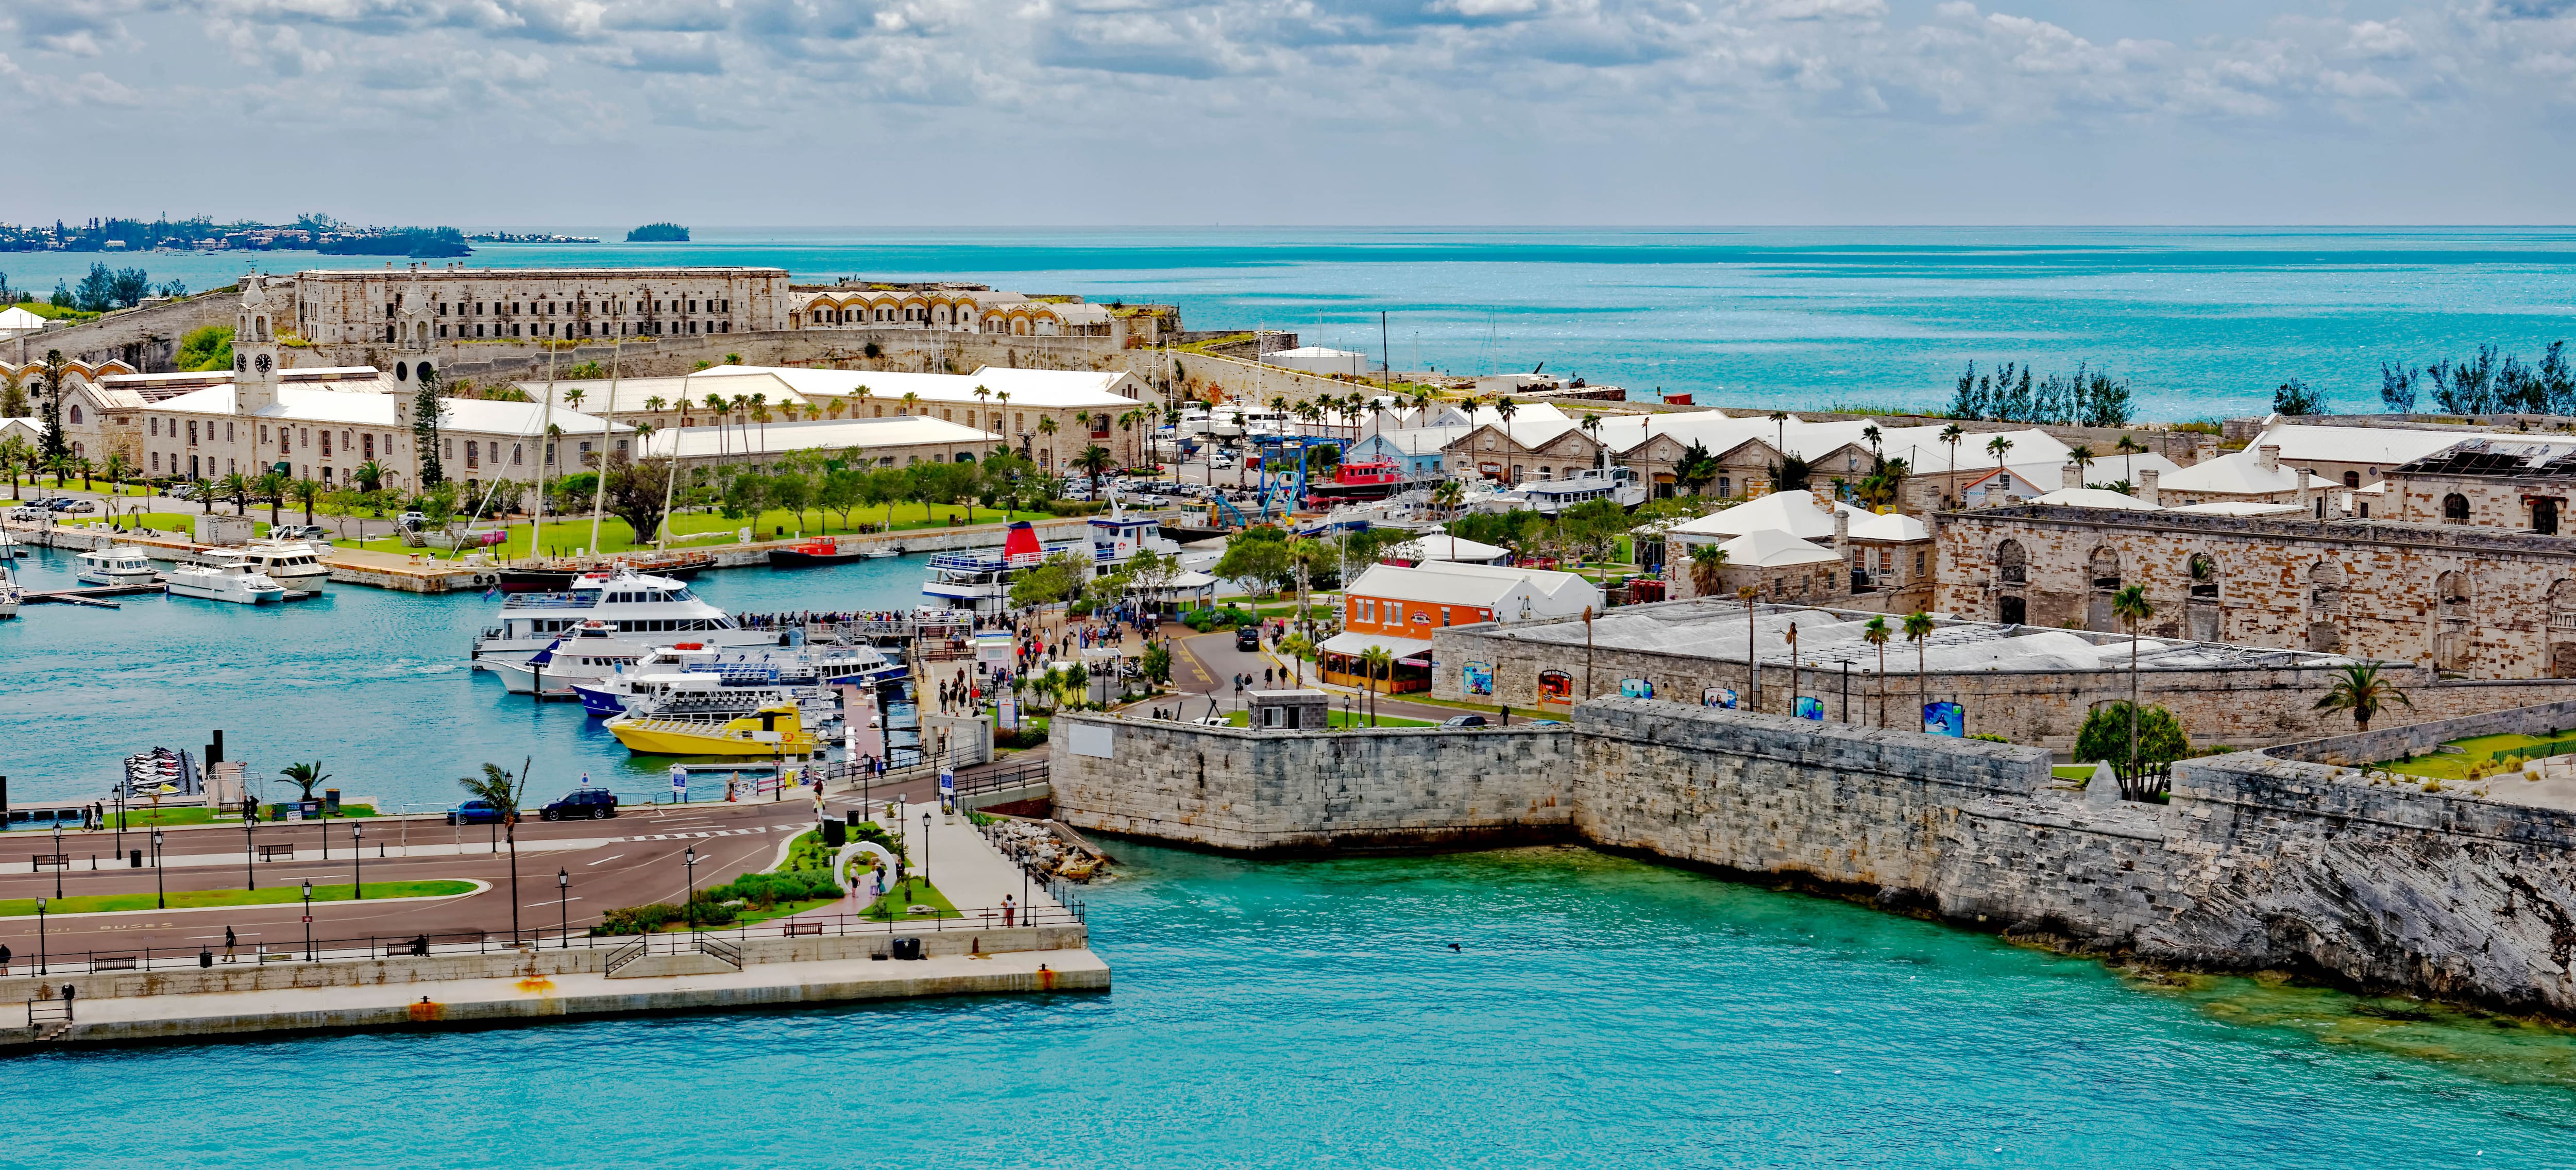 Crociera 12 giorni Caraibi da New York a Miami: Curaçao, Aruba e Bermuda